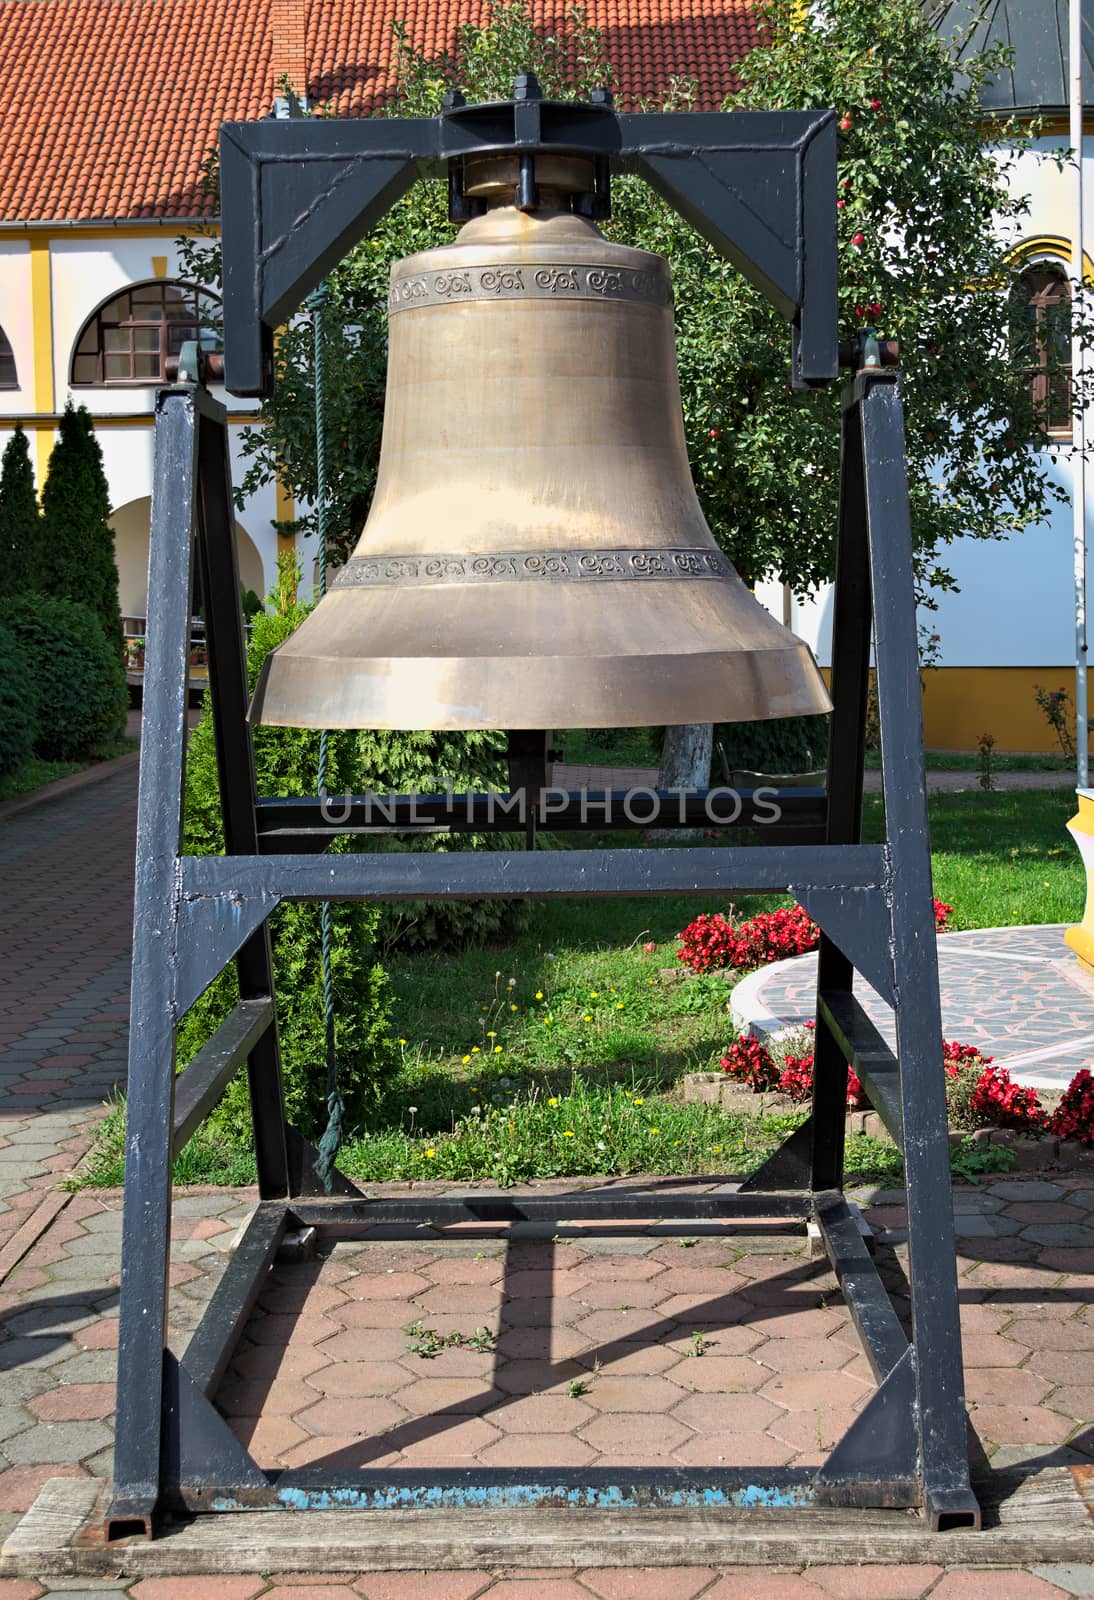 Big church bell in monastery garden, closeup